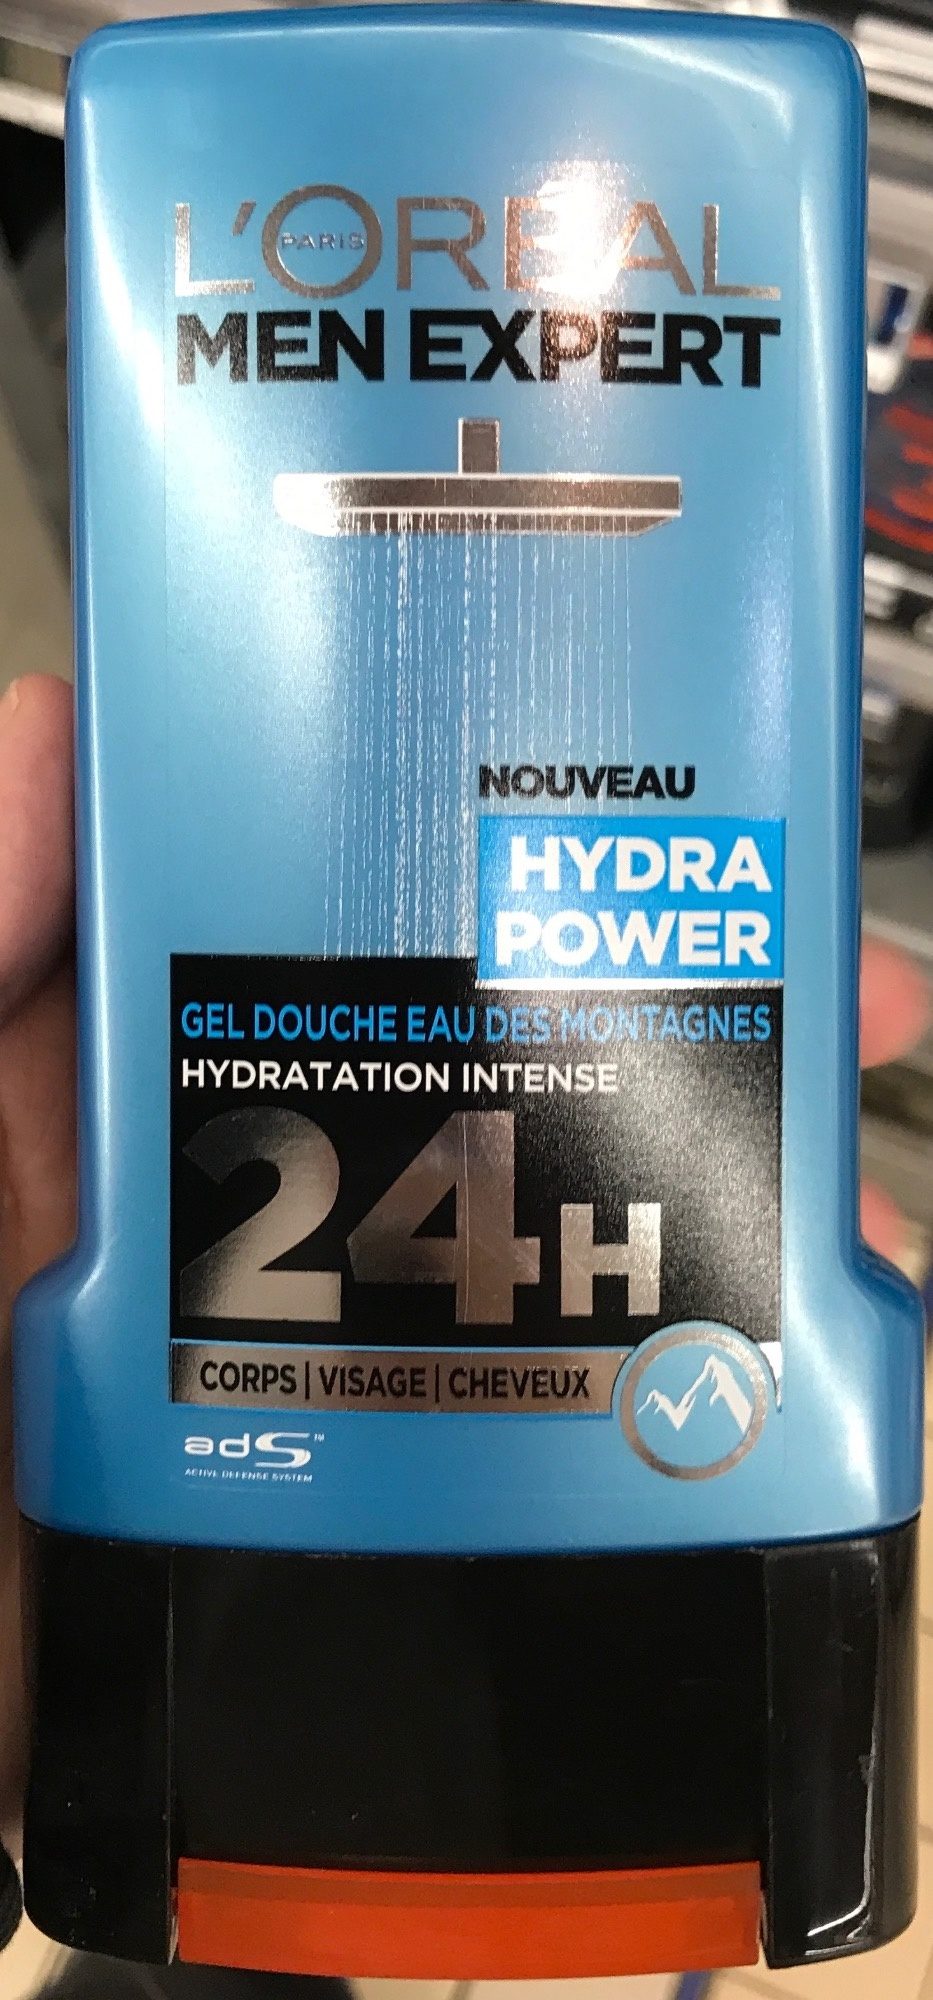 Gel douche Eau des Montagnes Hydra Power 24H - Product - fr